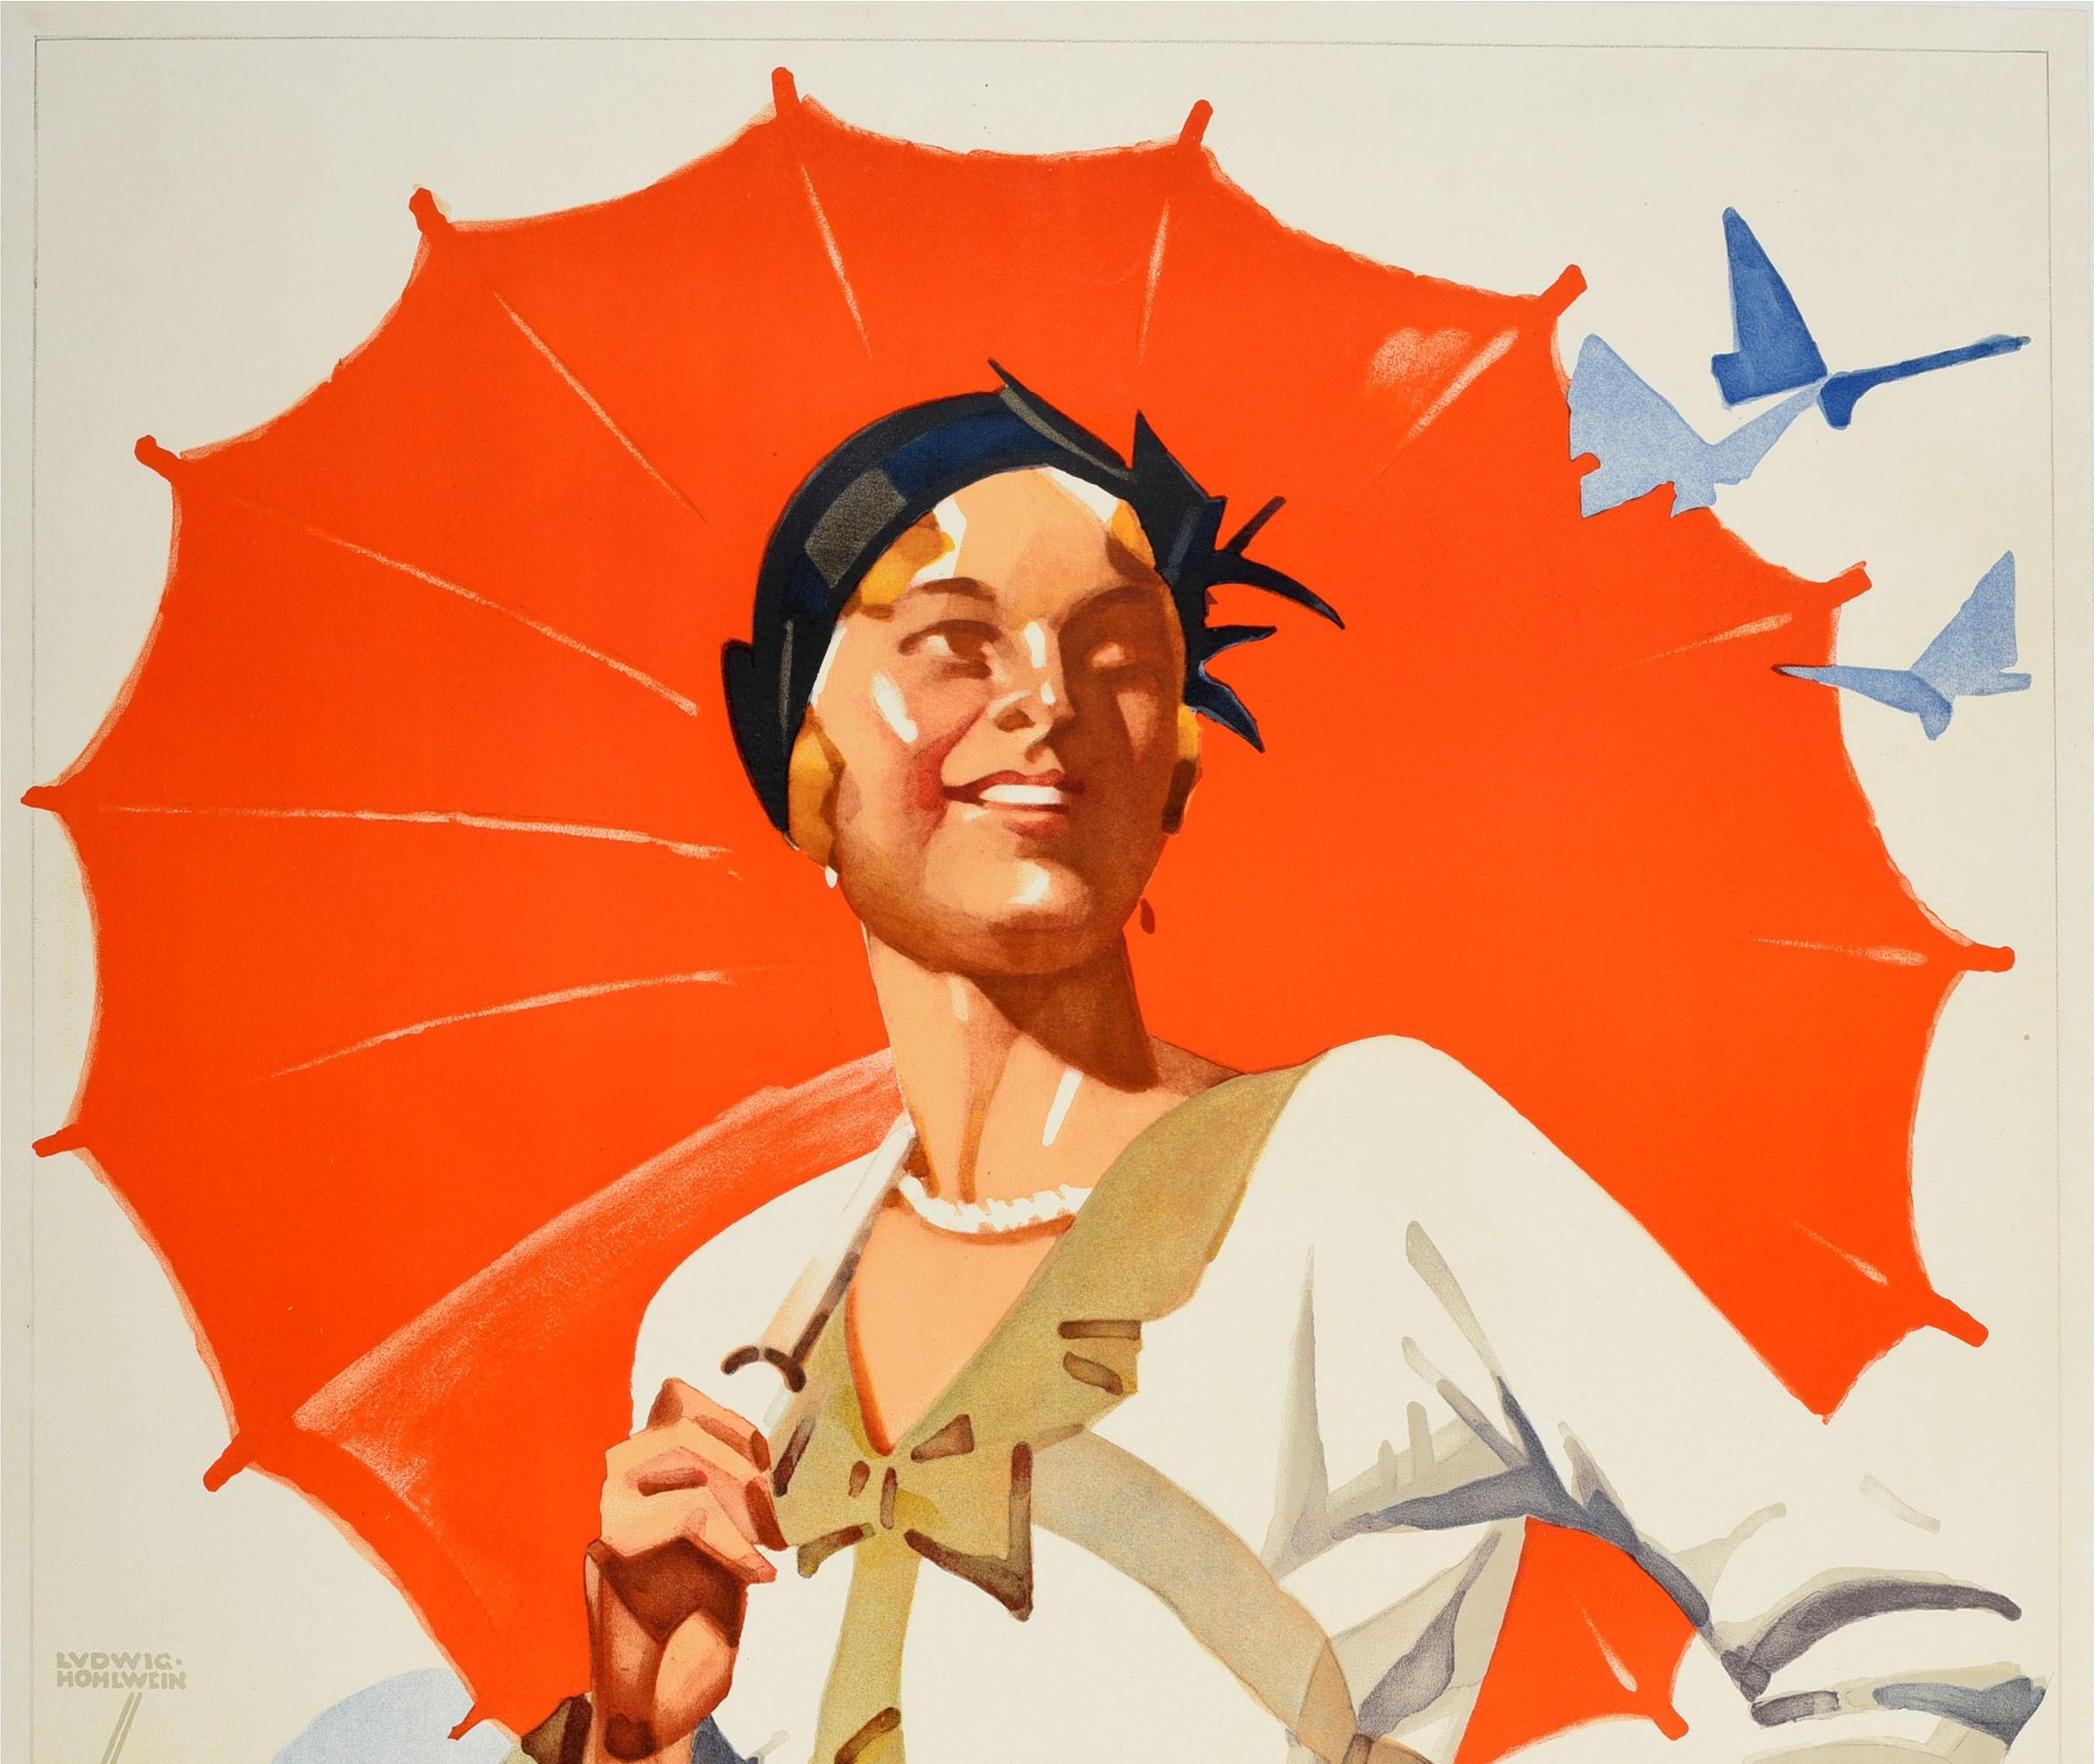 Affiche de voyage Art déco vintage originale - O Verao Na Alemanha / L'été en Allemagne - présentant une superbe illustration du célèbre affichiste allemand Ludwig Hohlwein (1874-1949) d'une dame à la mode en robe d'été tenant un parasol rouge avec